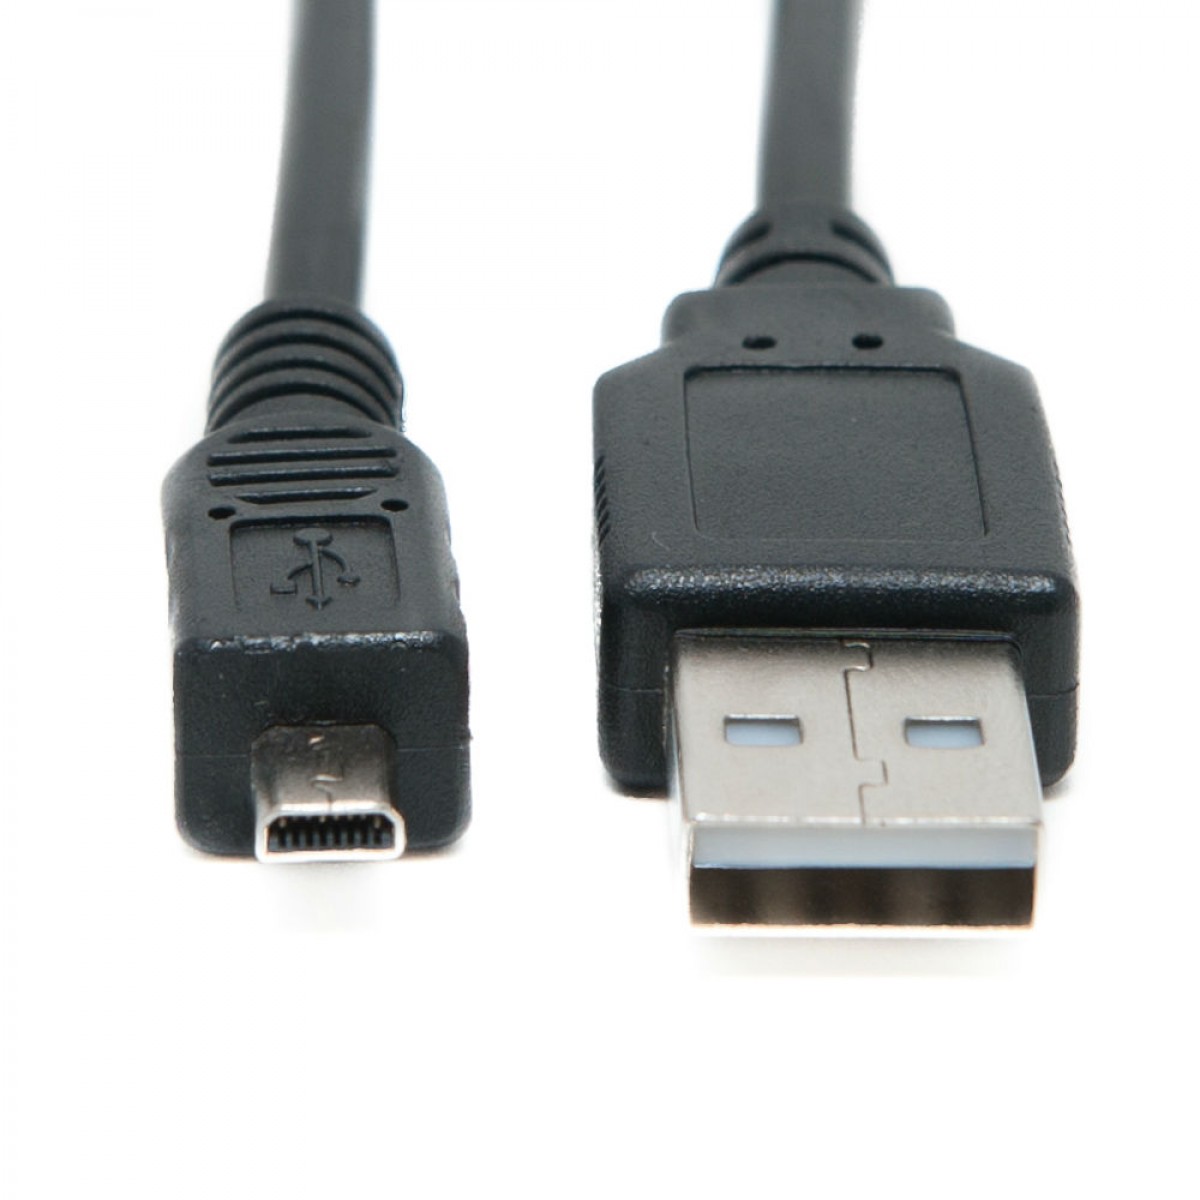 Cable USB para Pentax Optio x90 cómic cable de datos cable data